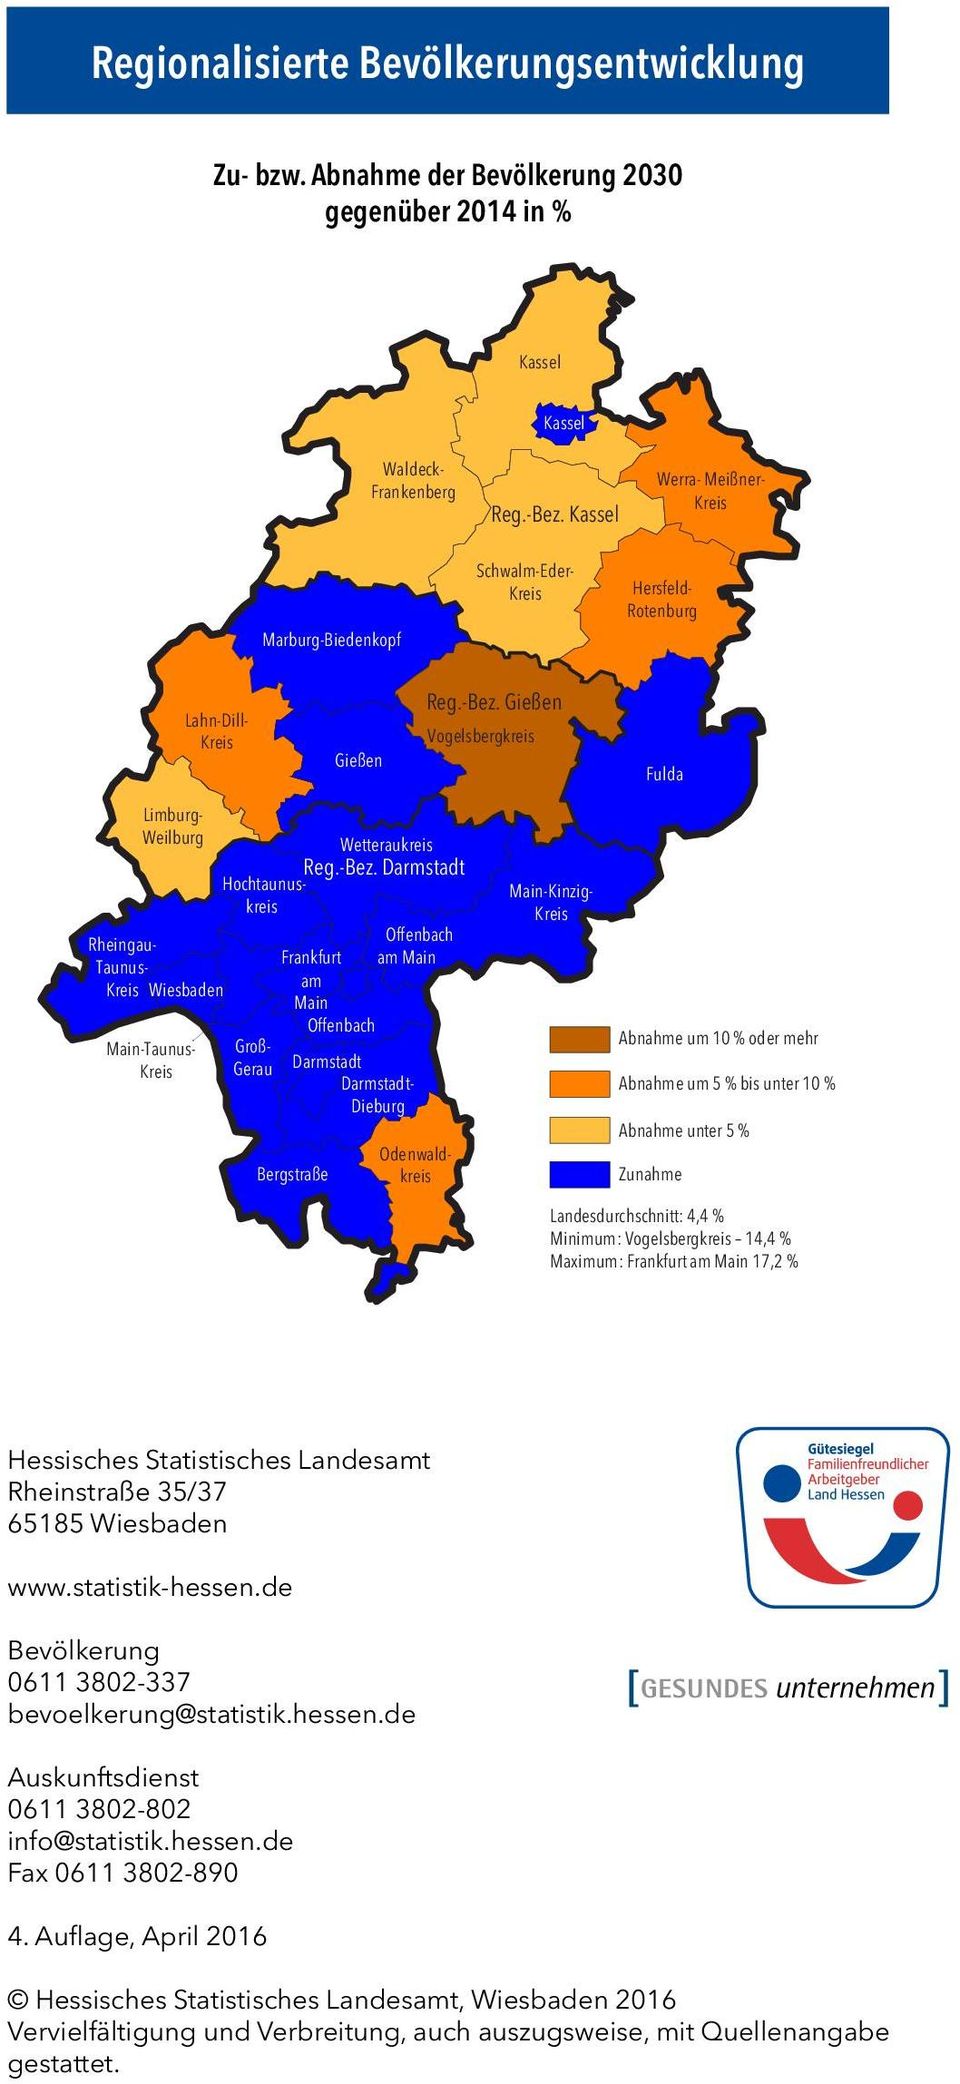 Gießen Vogelsbergkreis Fulda Limburg- Weilburg Main-Taunus- Rheingau- Taunus- Wiesbaden Wetteraukreis Reg.-Bez.